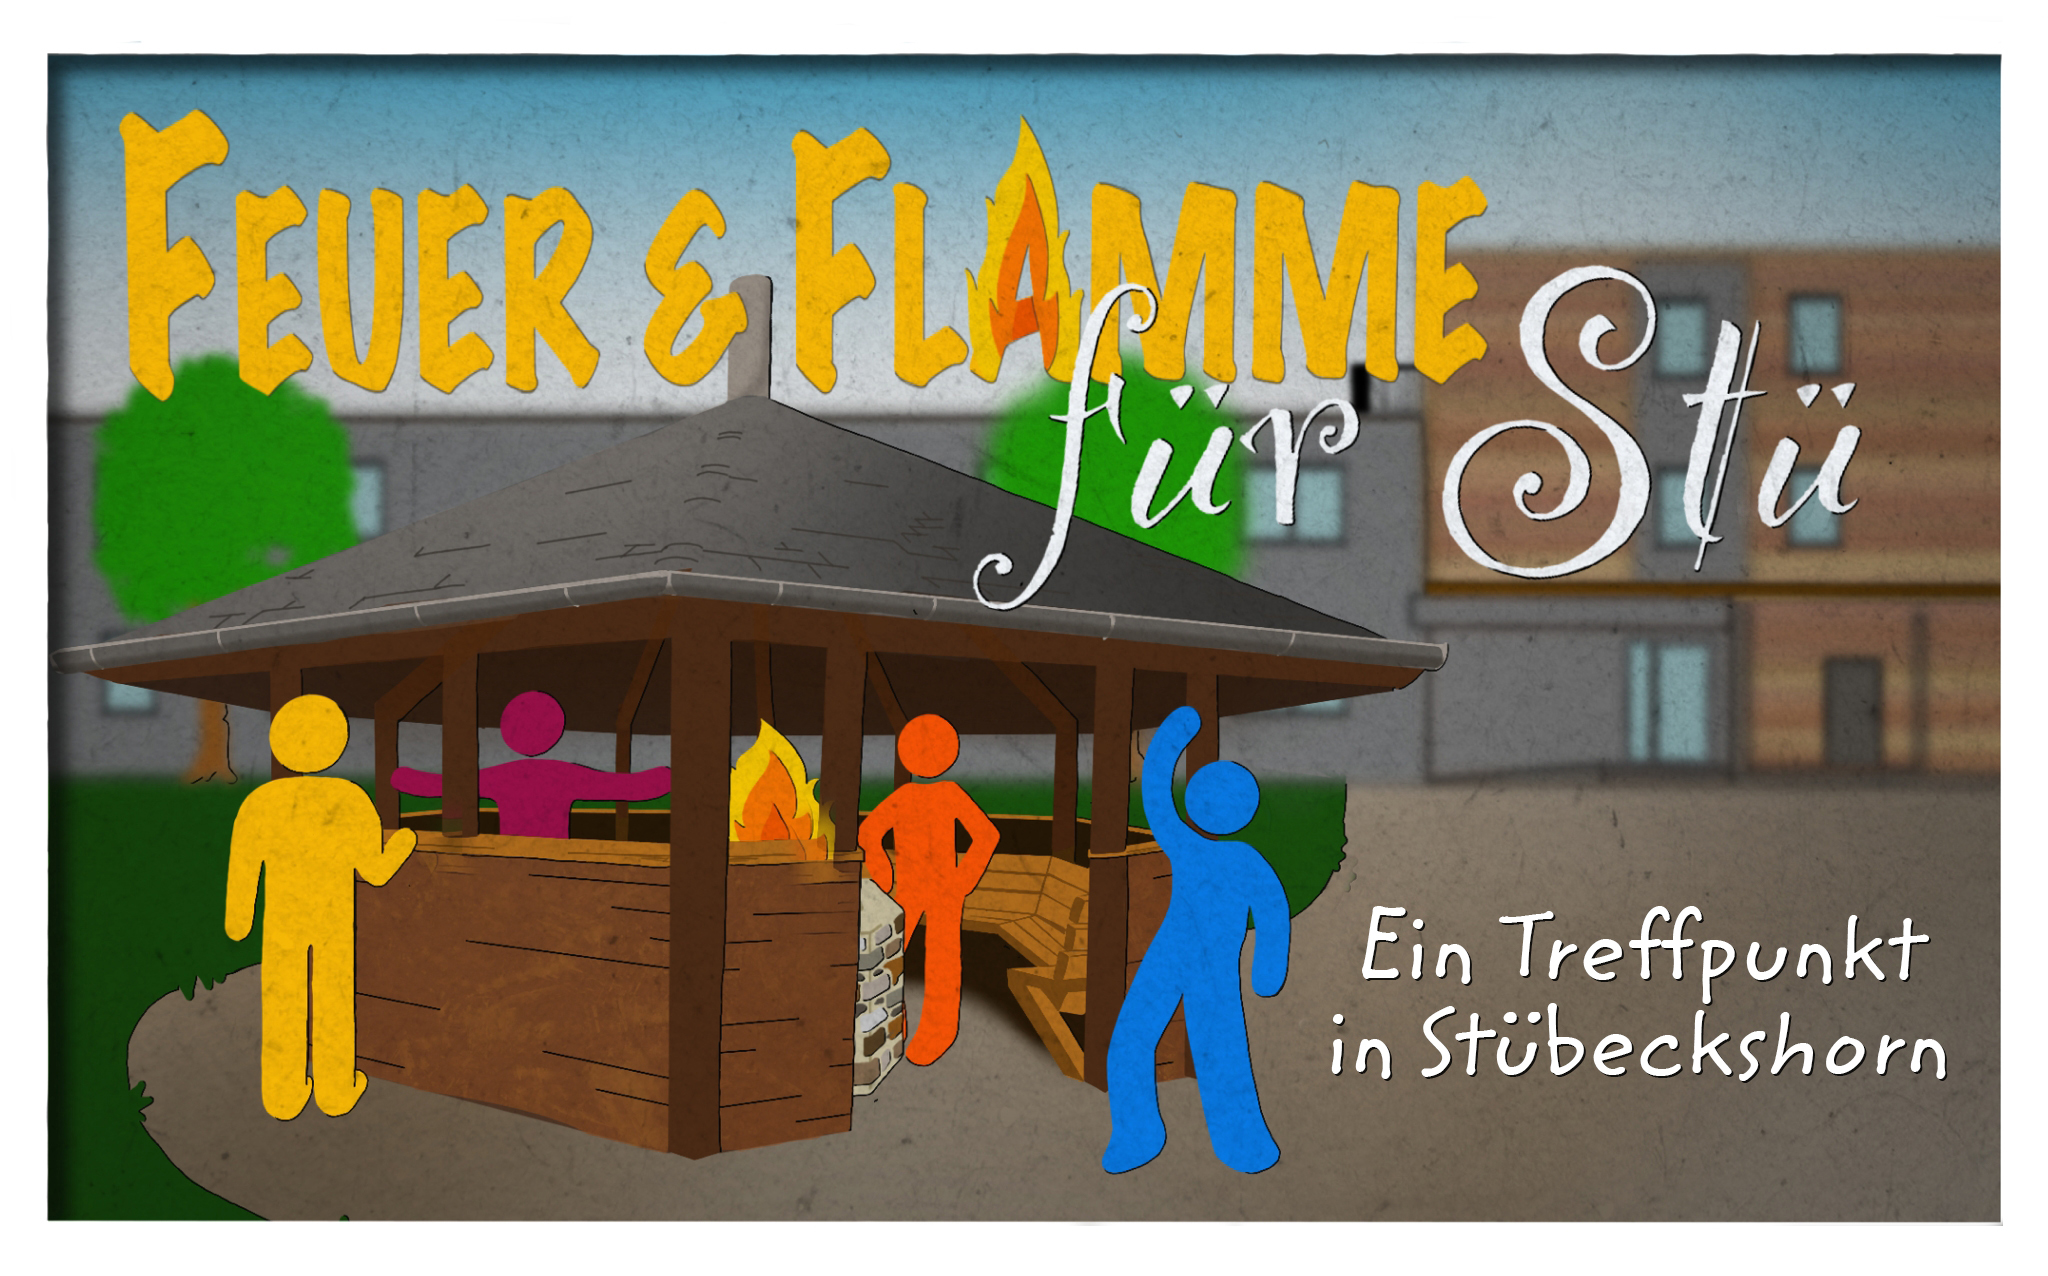 Feuer & Flamme für Stübeckshorn